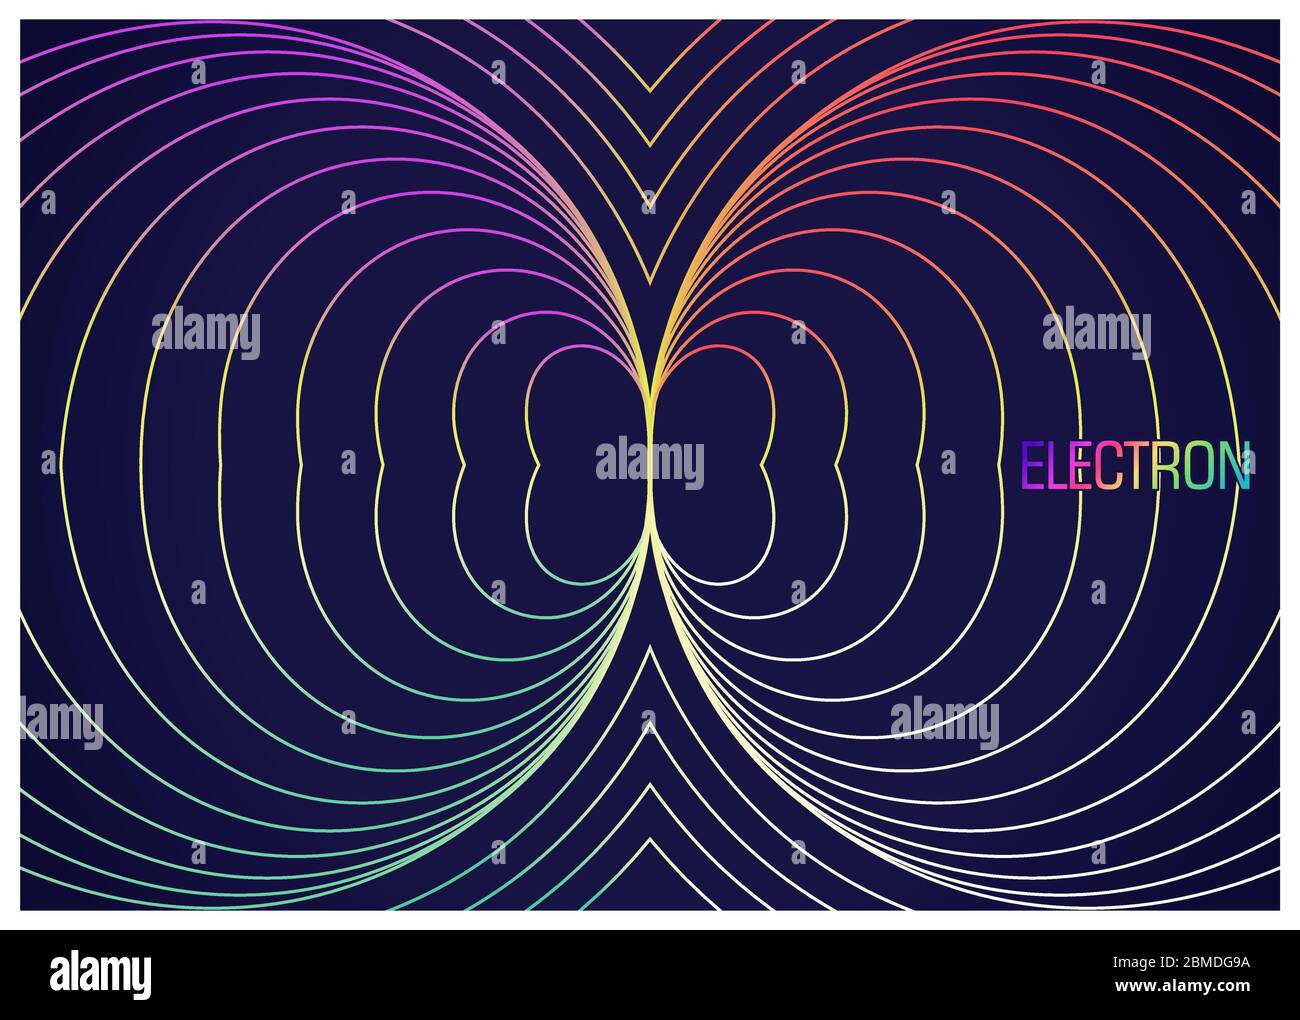 Elettrone. Composizione colorata con linee ondulate. Immagine astratta di particelle fisiche elementari. Progettazione concettuale la teoria della scienza. Illustrazione del vettore Illustrazione Vettoriale